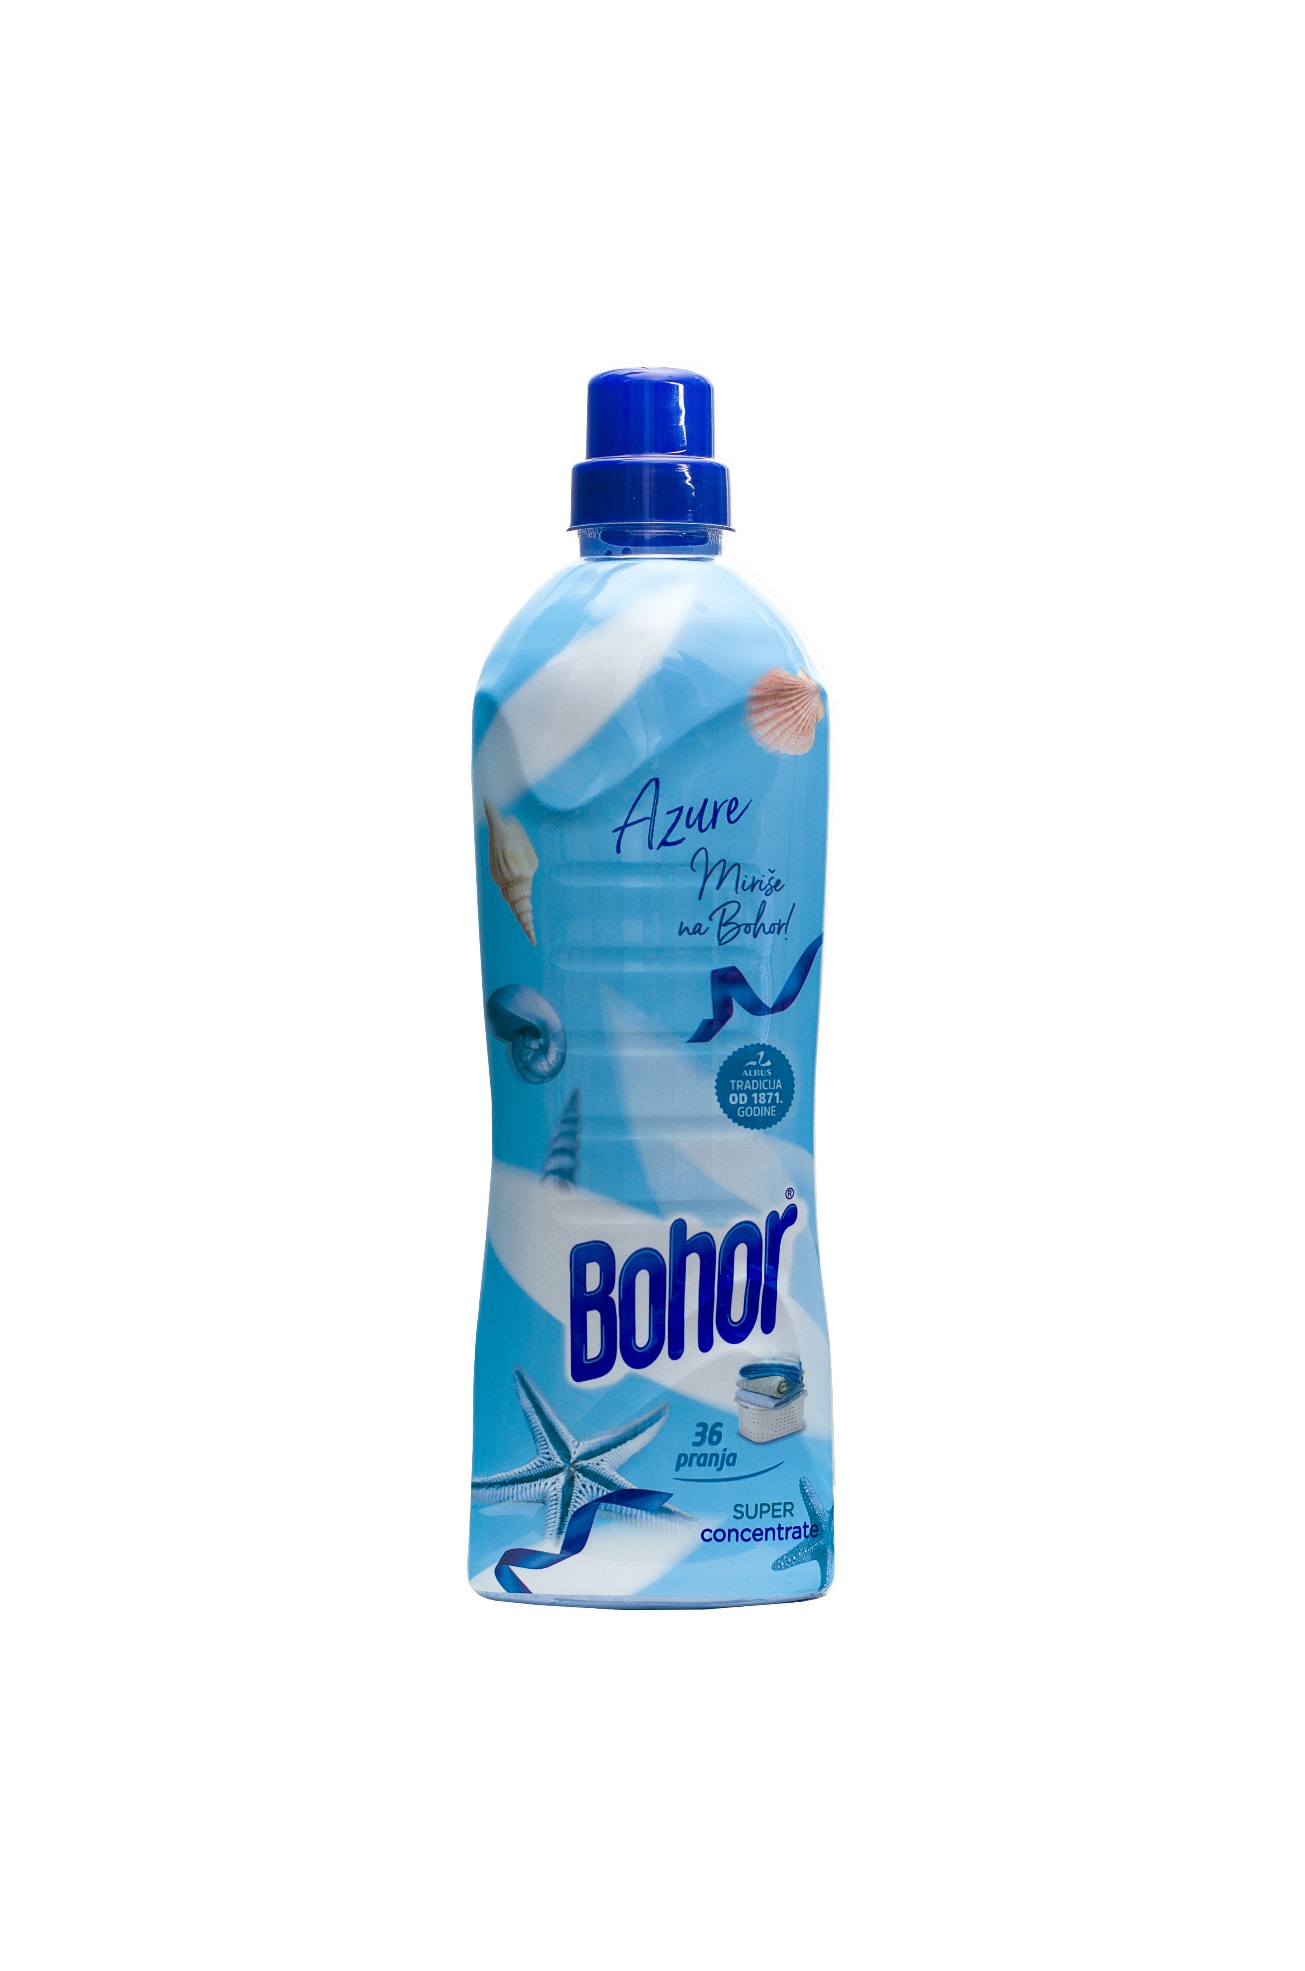 Bohor azure - Softener 850ml